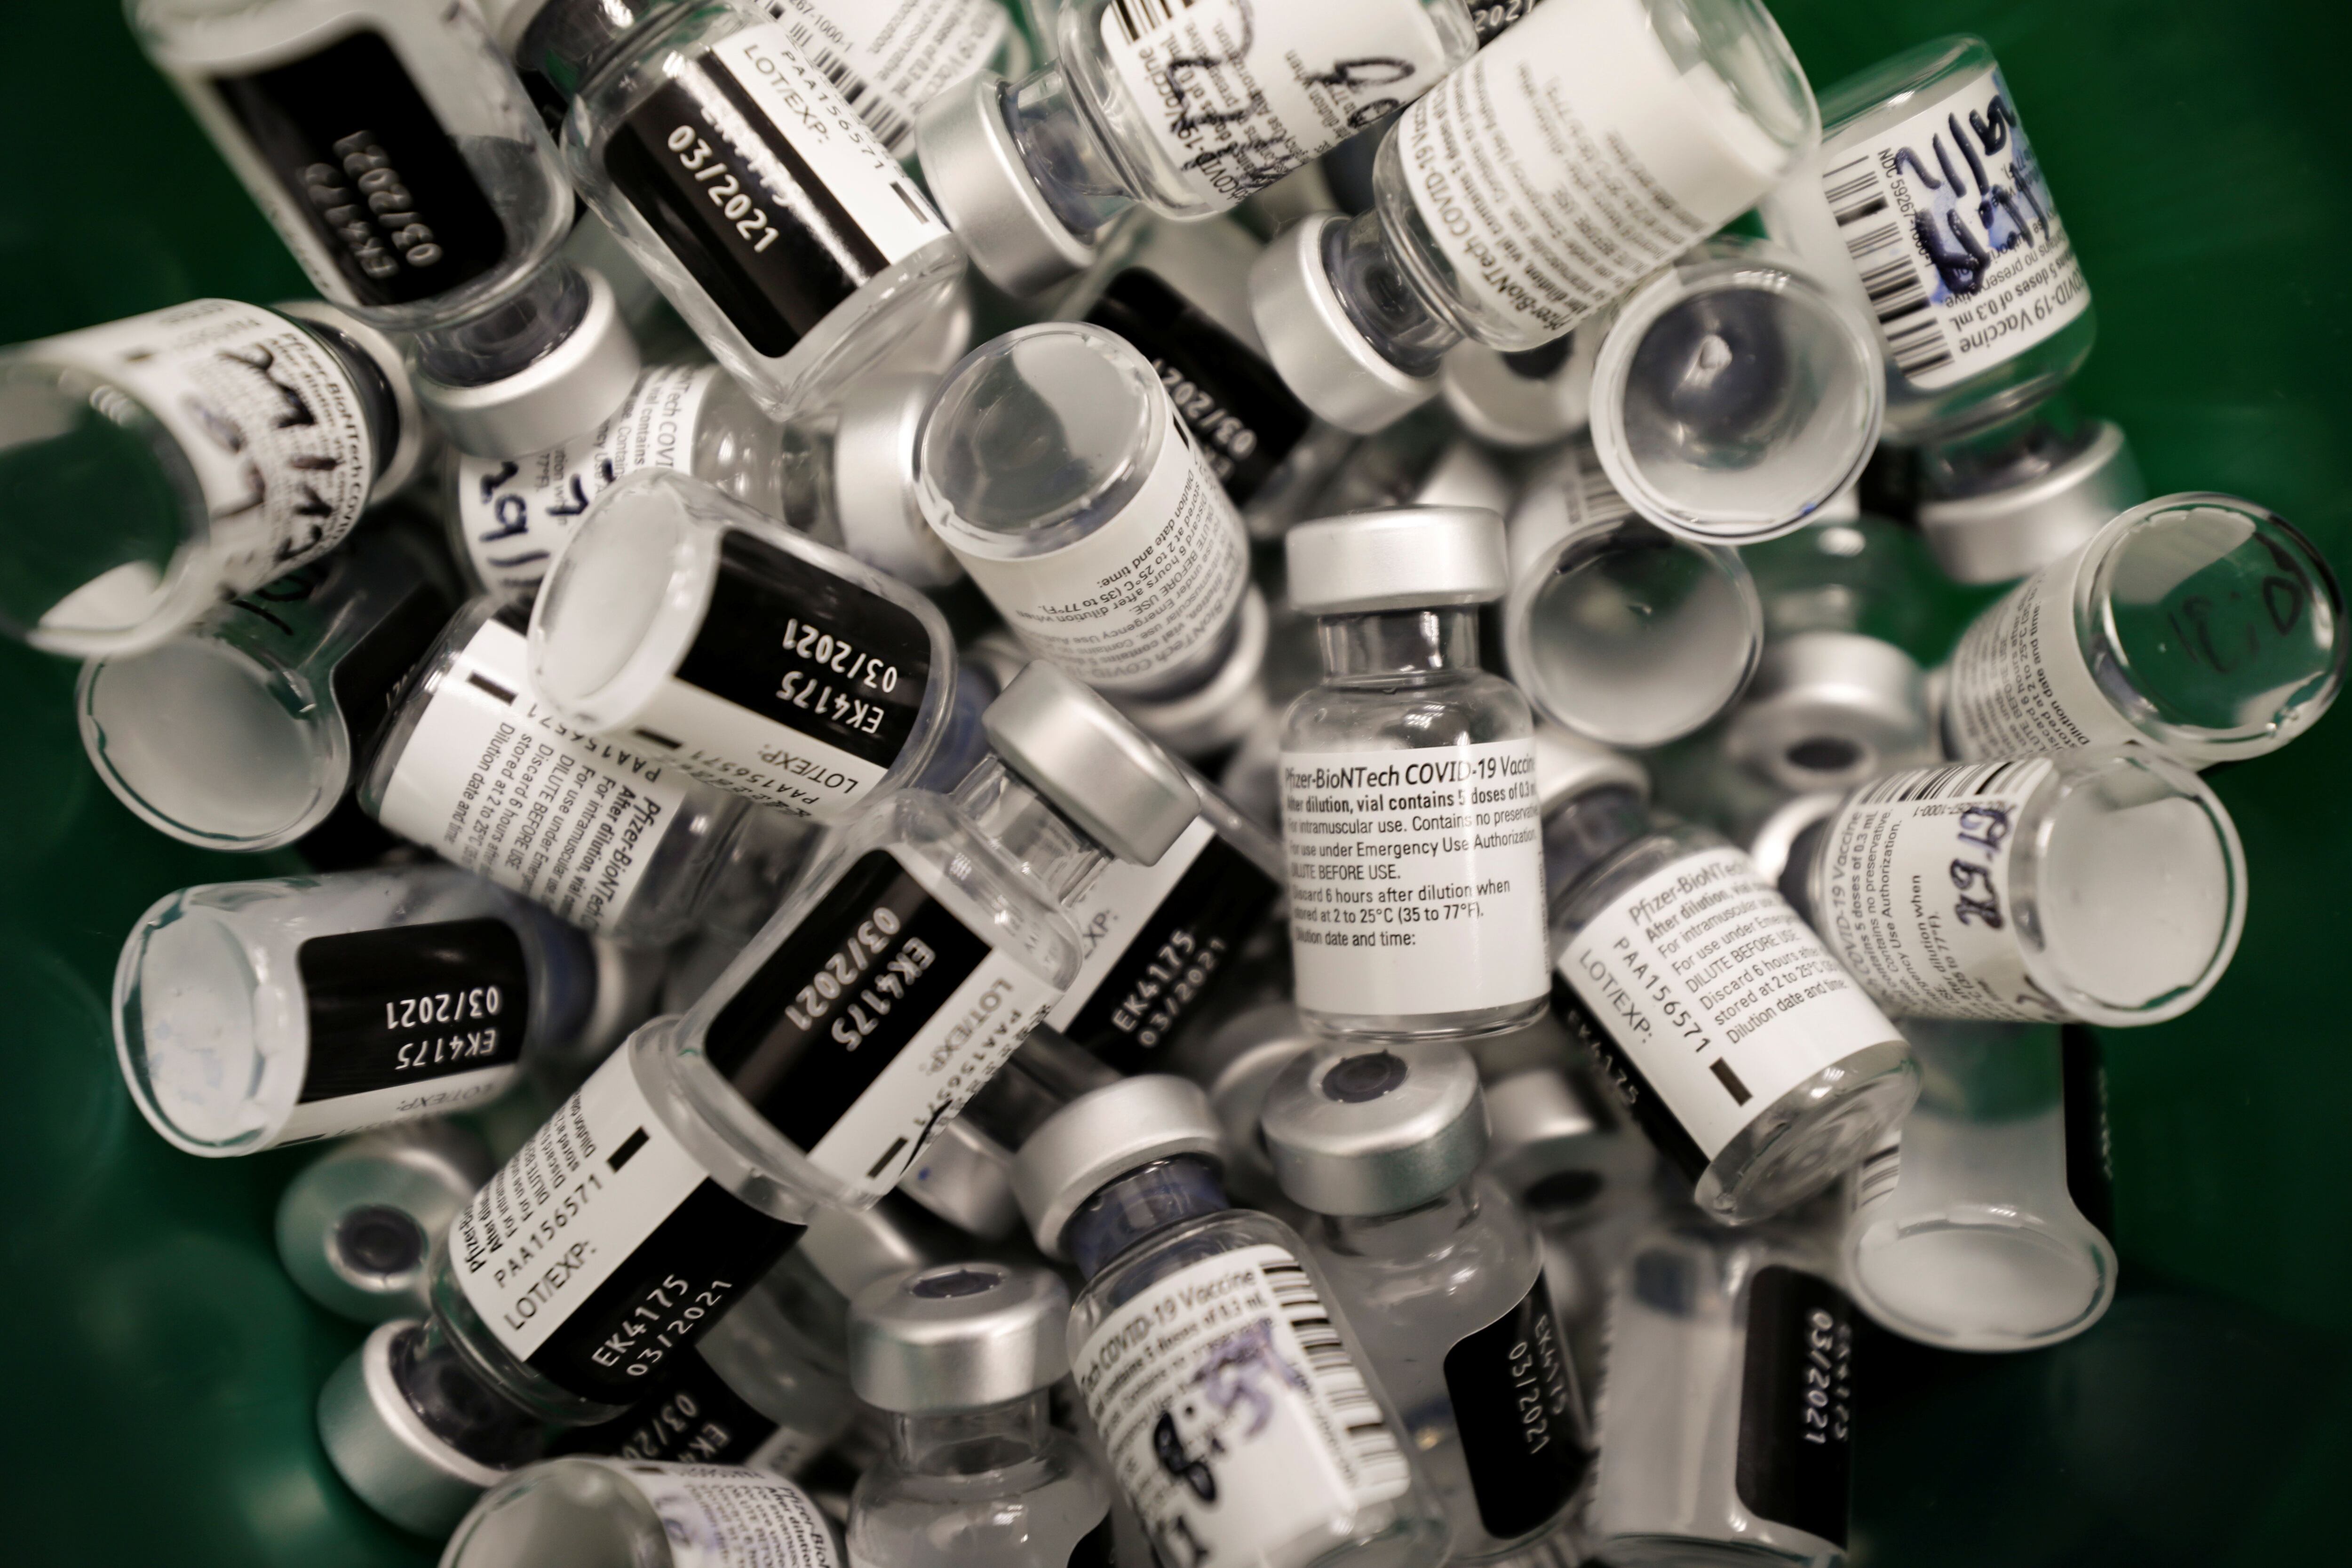 Frascos que contenían la vacuna son descartados luego de la aplicación a los ciudadanos en Ashdod, Israel - REUTERS/Amir Cohen